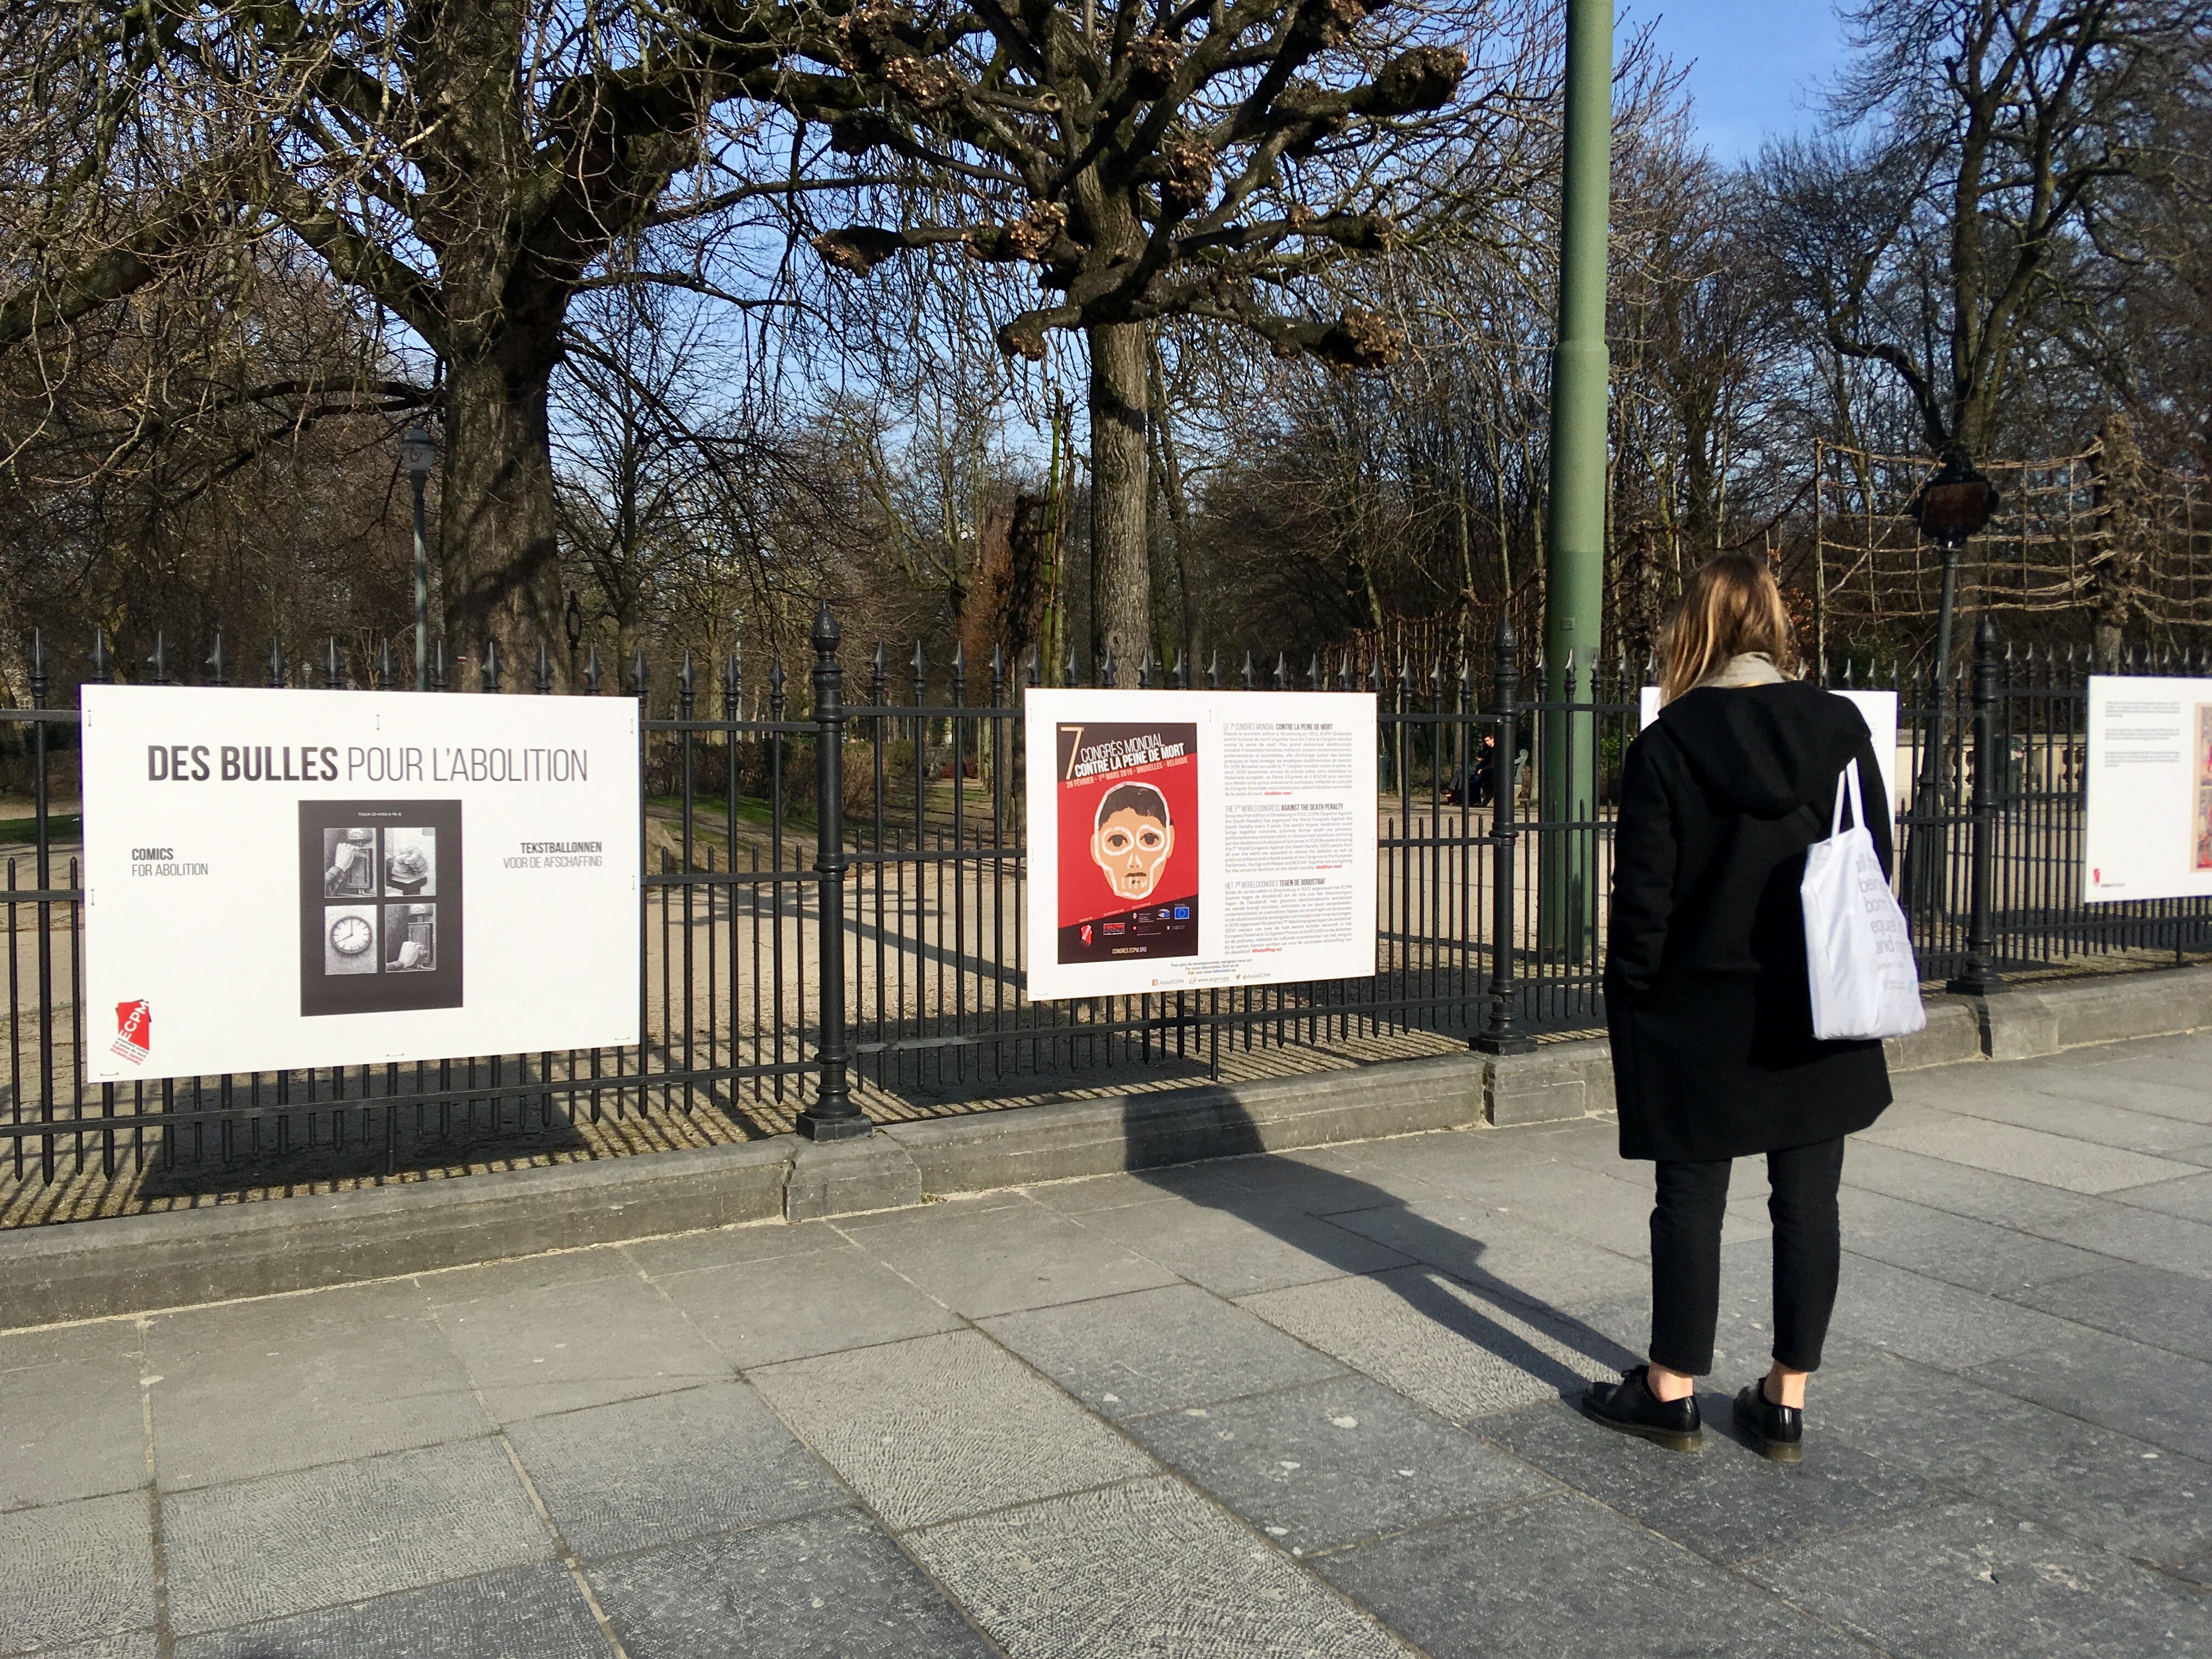 Des bulles pour l'abolition sur les grilles du Parc de Bruxelles, février 2019 © Adèle Martignon